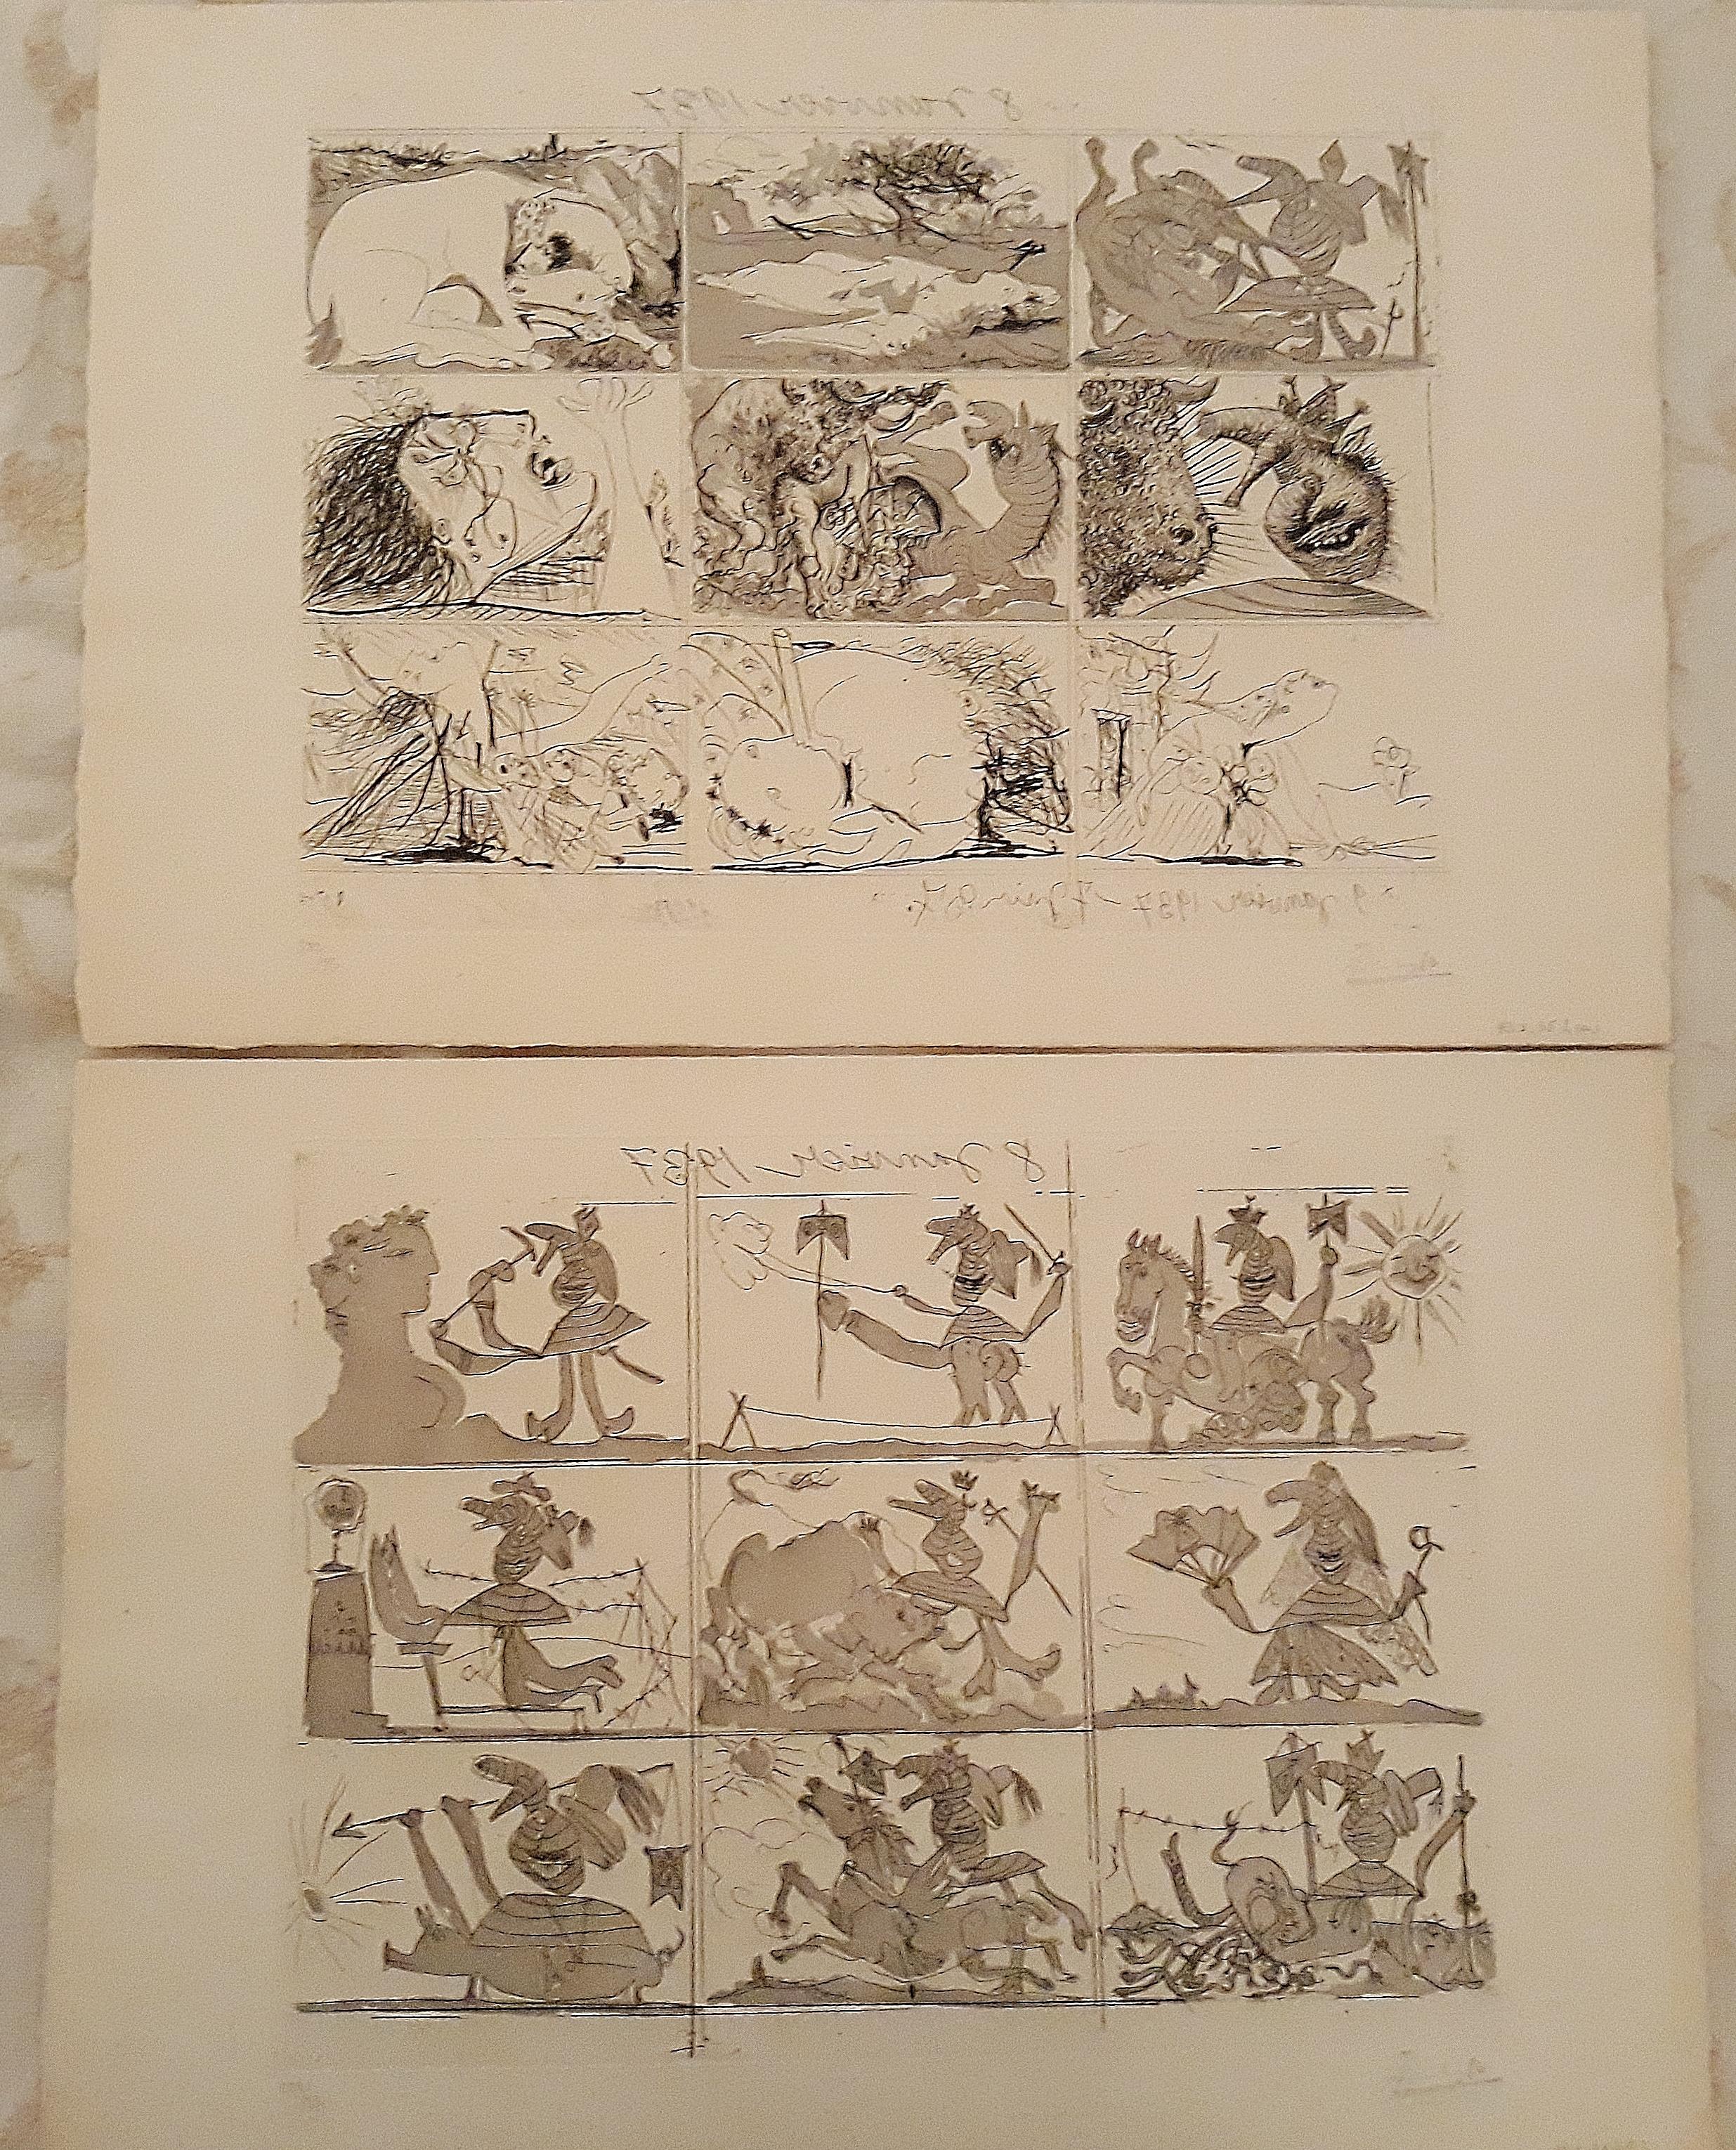 Pablo Picasso Print - Sueño y Mentira de Franco - Original Etchings and Aquatints by P. Picasso - 1937